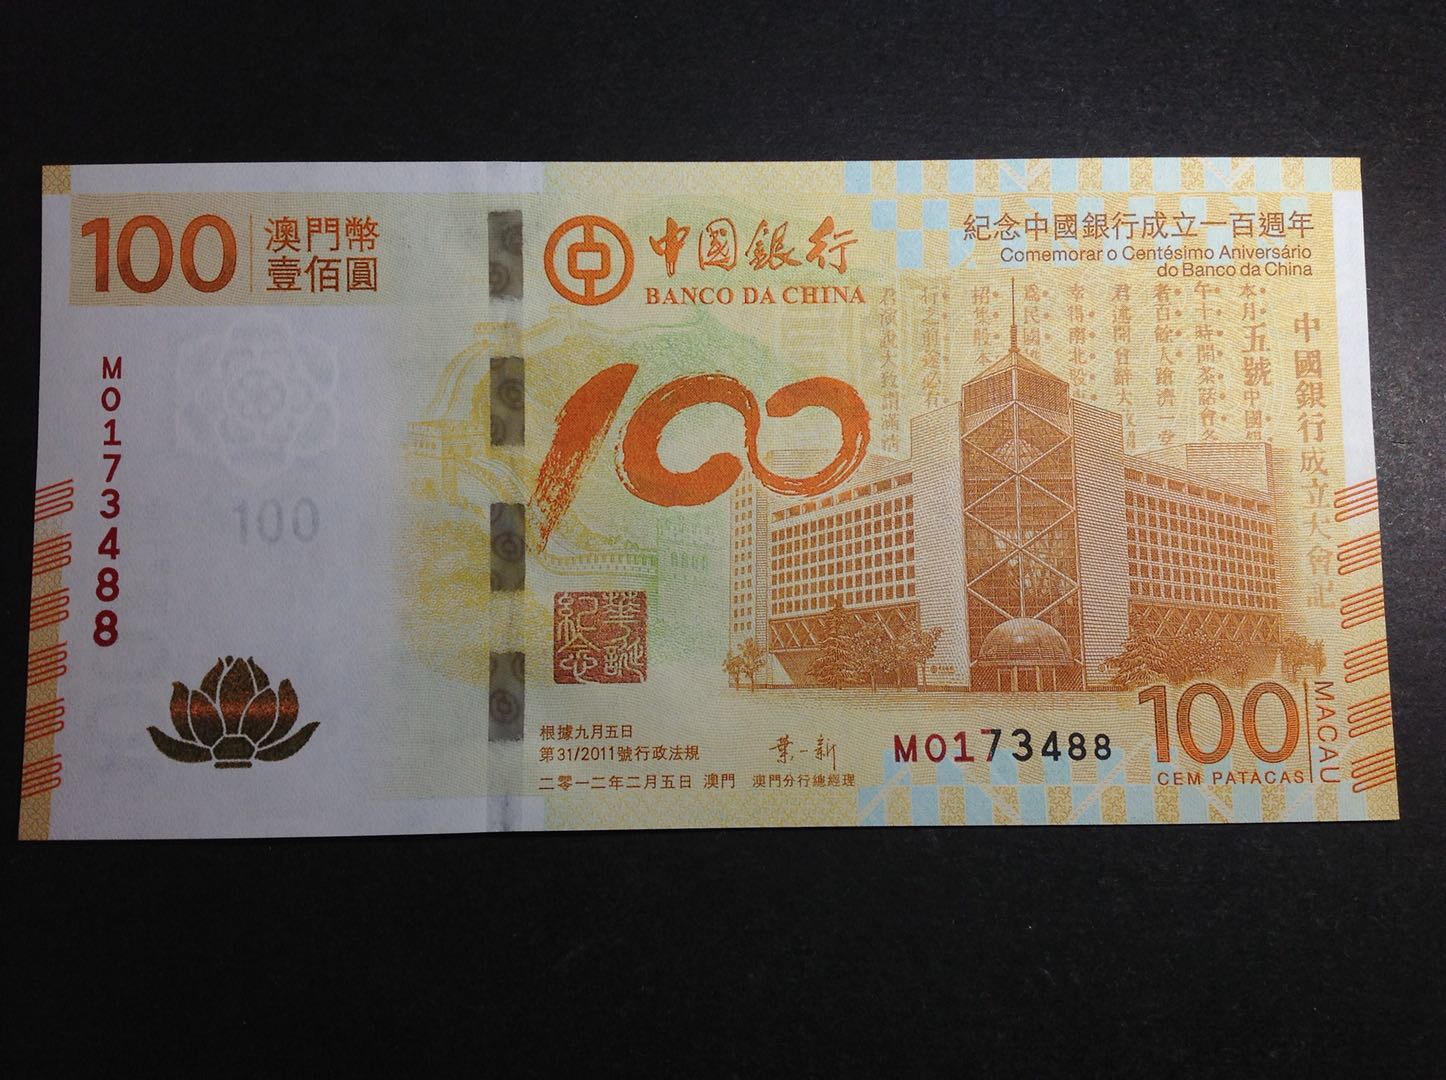 澳门币壹佰圆纪念中国银行成立100周年纪念钞(荷花